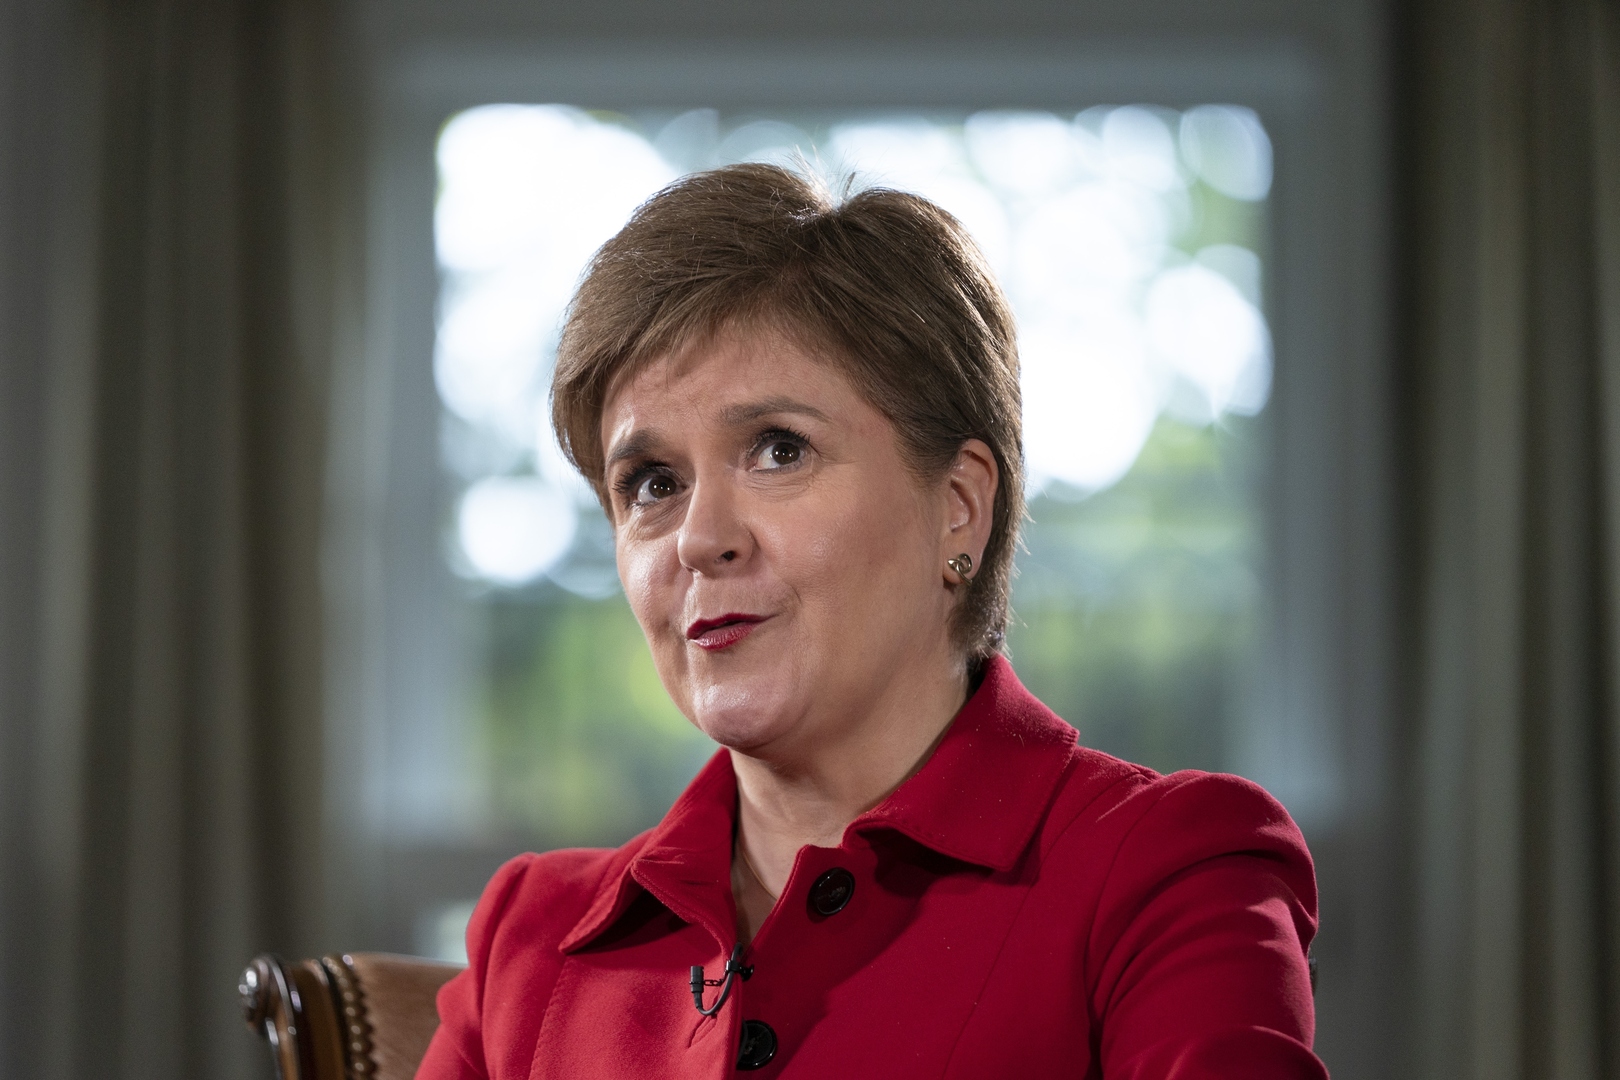 رئيسة وزراء اسكتلندا: مشاهدة فشل المحافظين على شاشة التلفزيون تعزز قضية استقلالنا